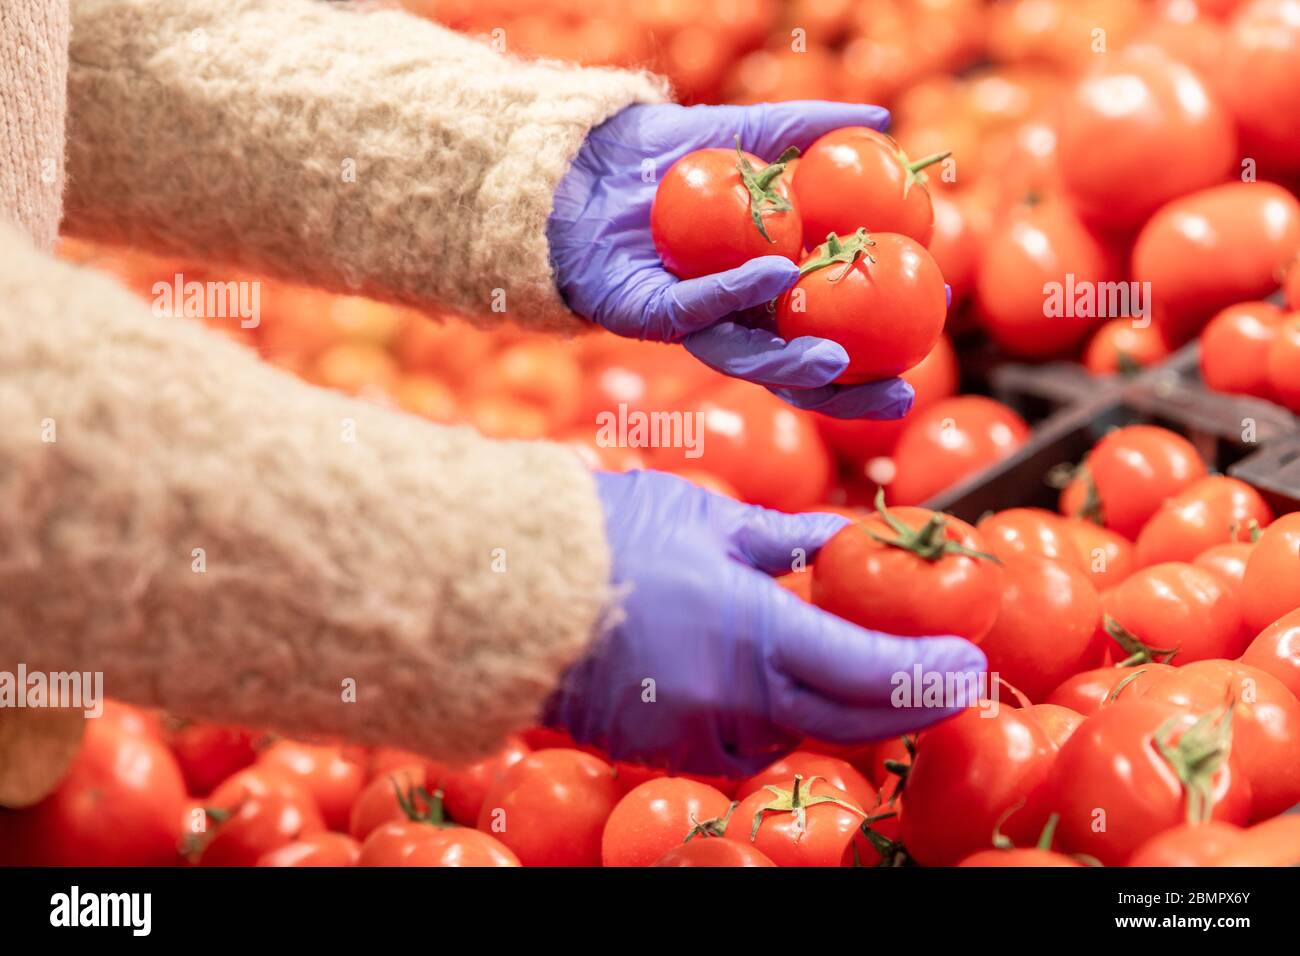 Donna mani in guanti di gomma medica sceglie pomodori rossi maturi in supermercato, soft focus. Misure protettive contro la pandemia di coronavirus, covid-19 Foto Stock